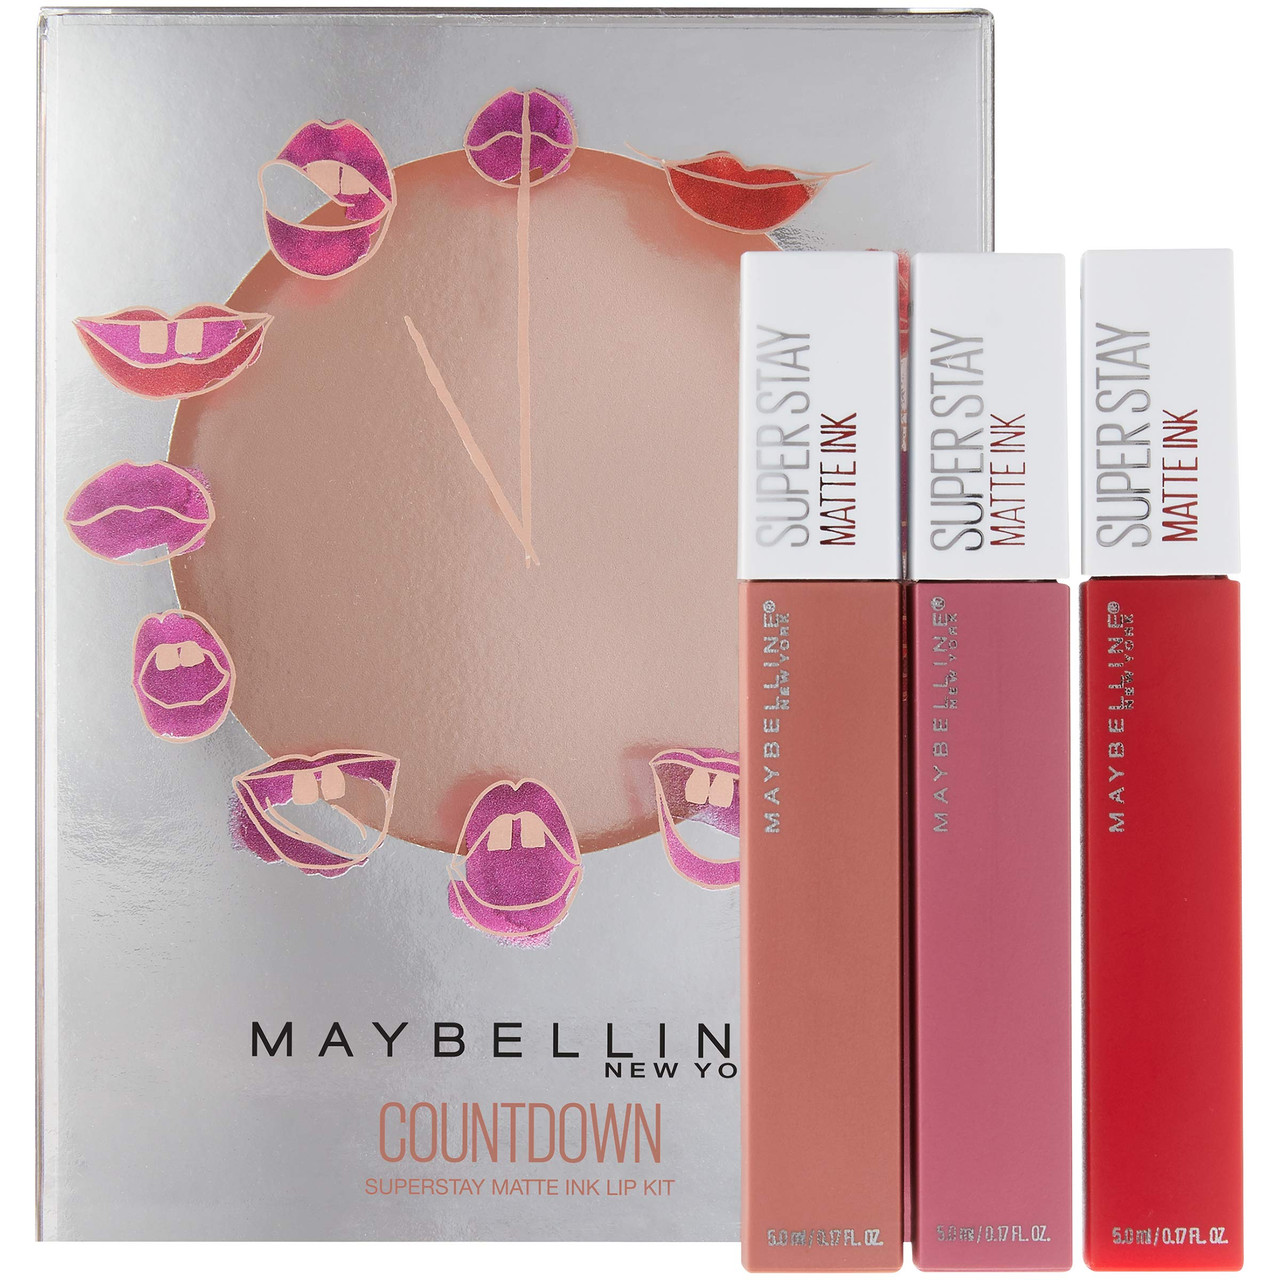 Maybelline Super Stay Matte Ink Un-nude Liquid Lipstick, Seductress